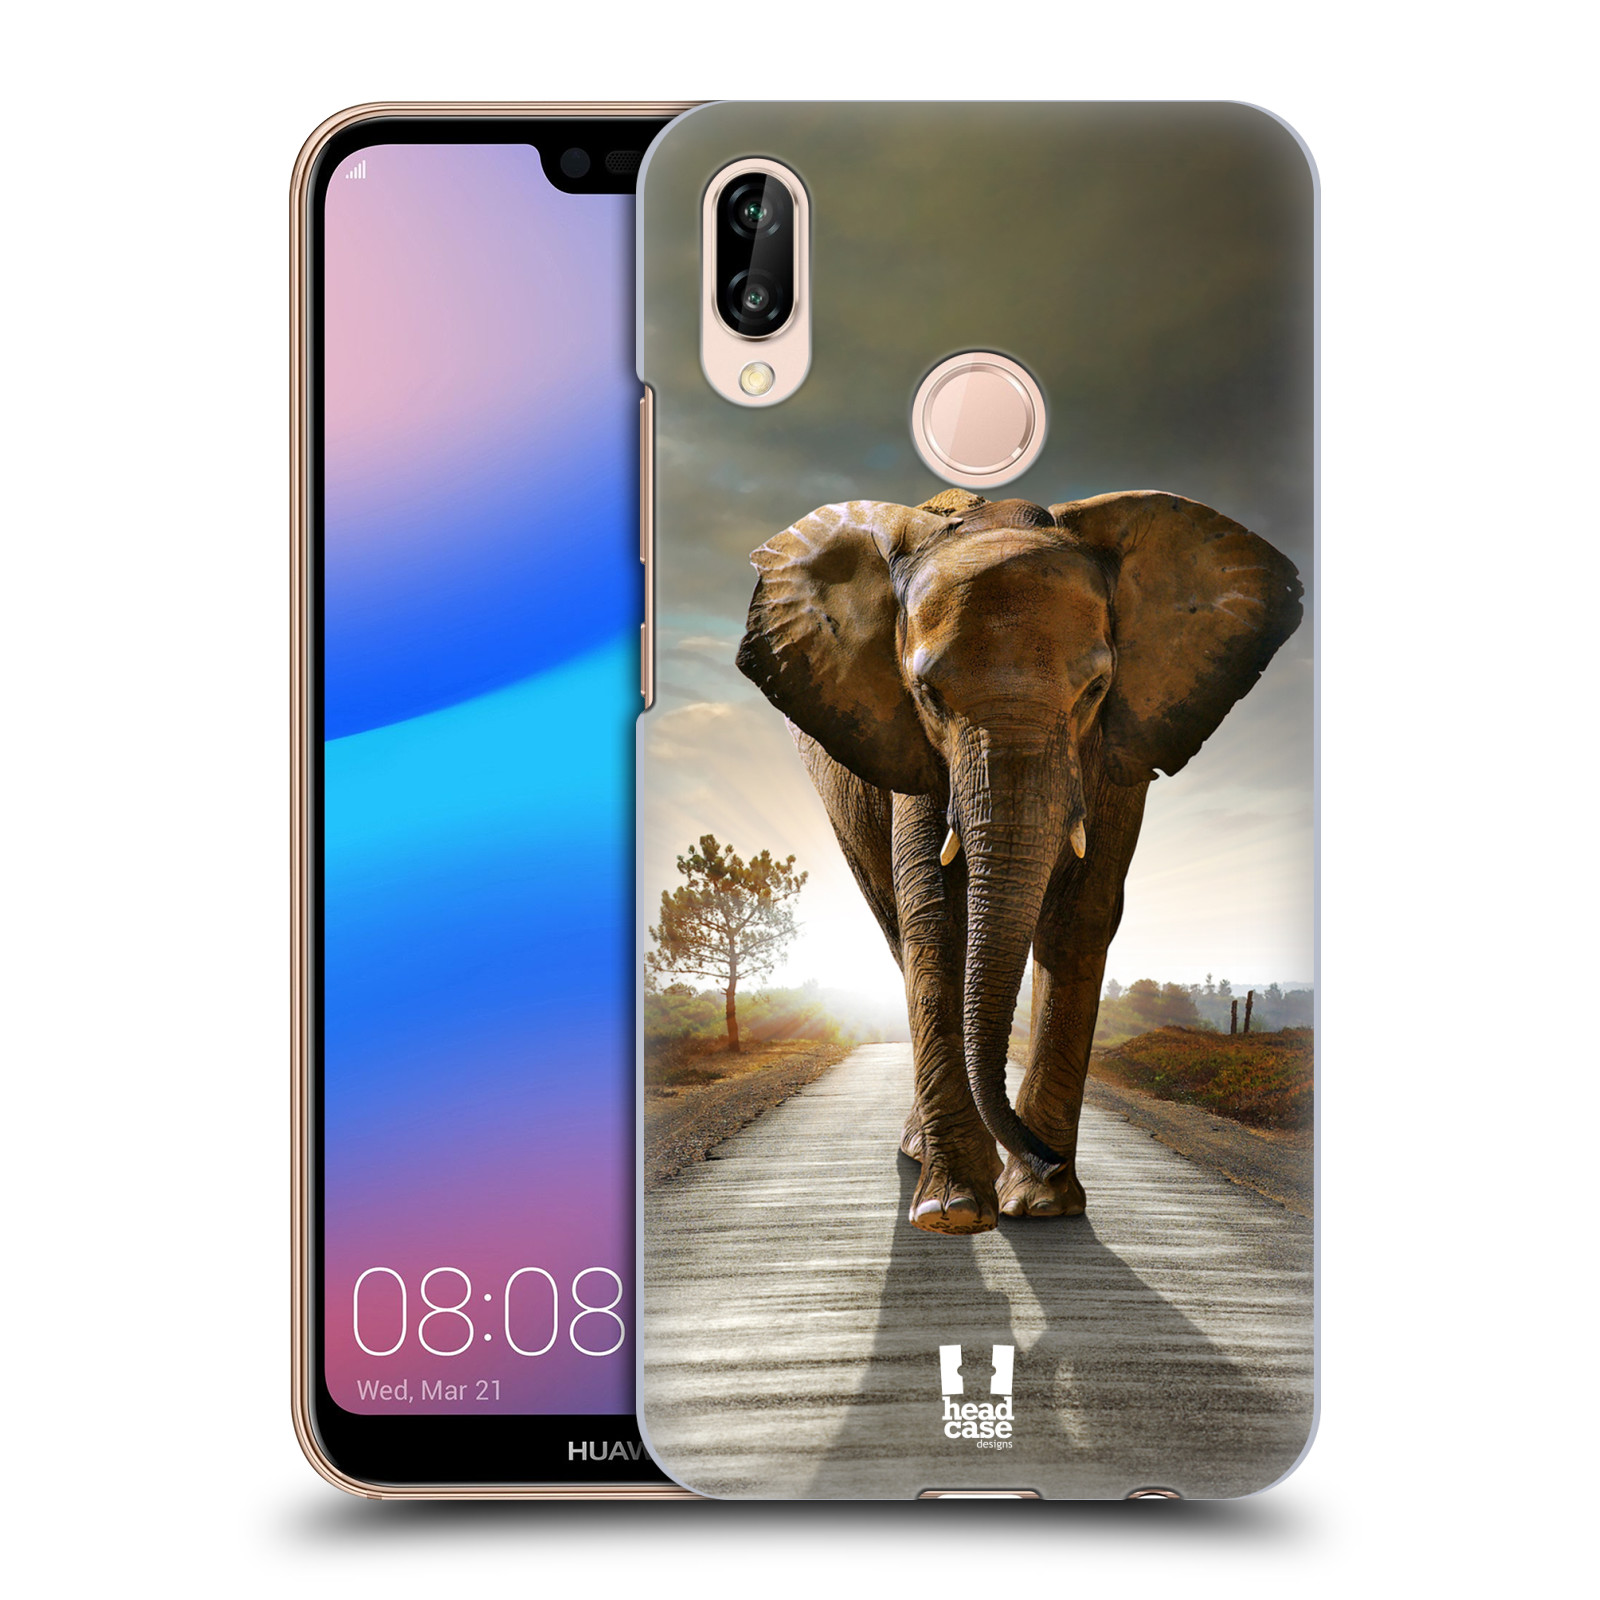 Zadní obal pro mobil Huawei P20 LITE - HEAD CASE - Svět zvířat kráčející slon